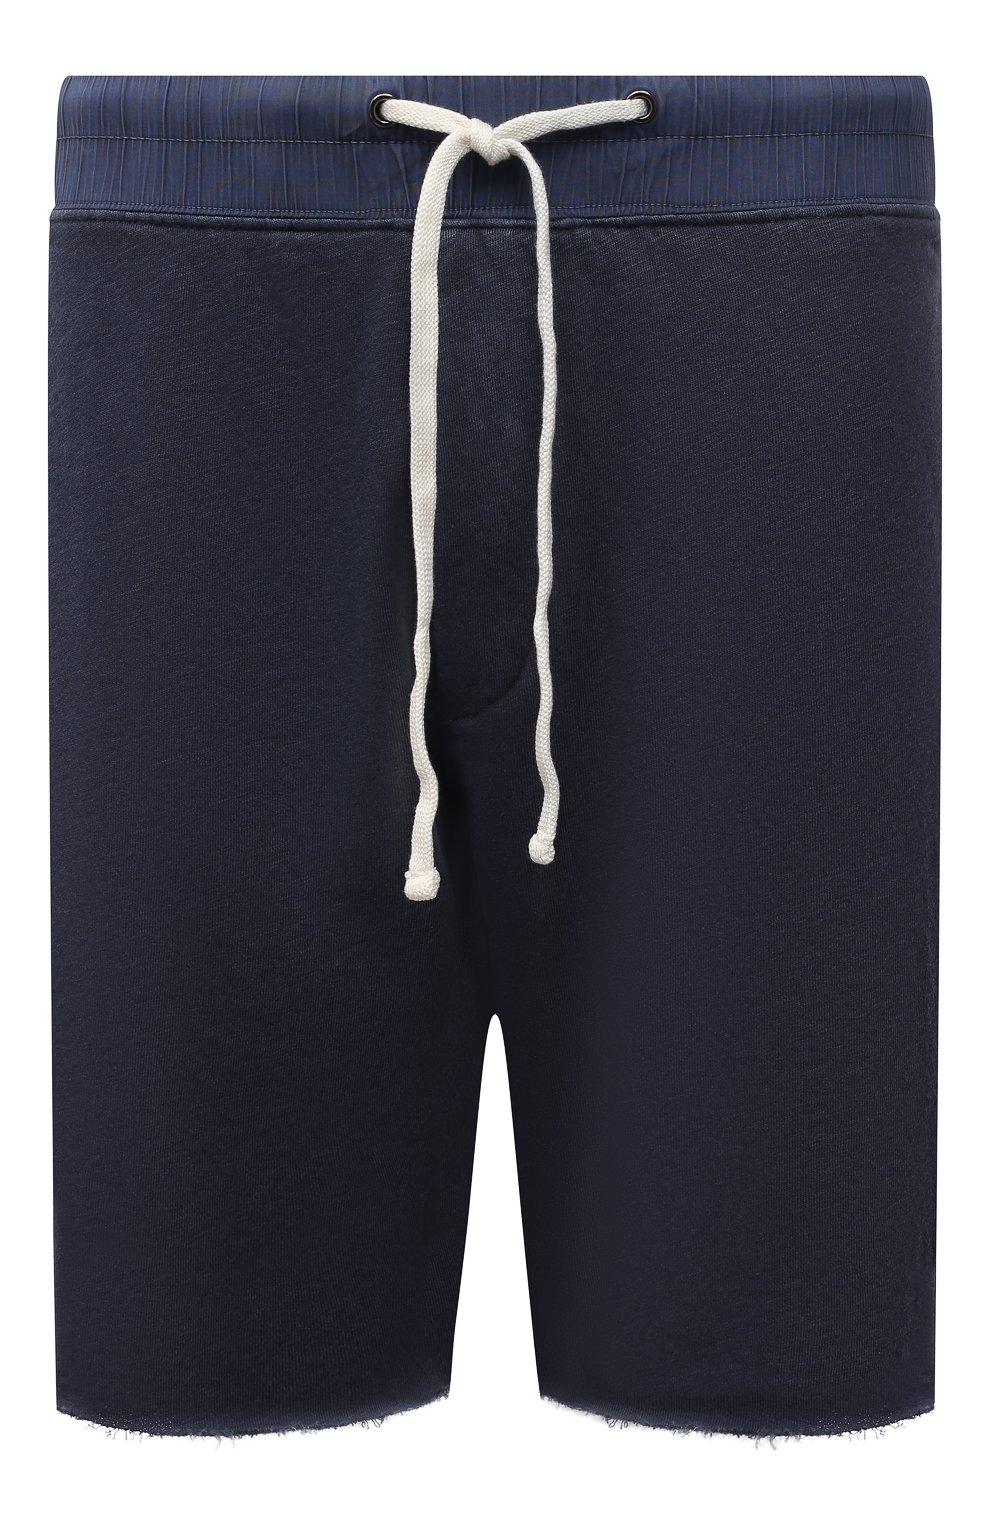 Мужские хлопковые шорты JAMES PERSE темно-синего цвета, арт. MXA4238 | Фото 1 (Длина Шорты М: До колена; Случай: Повседневный; Материал внешний: Хлопок; Стили: Спорт-шик)